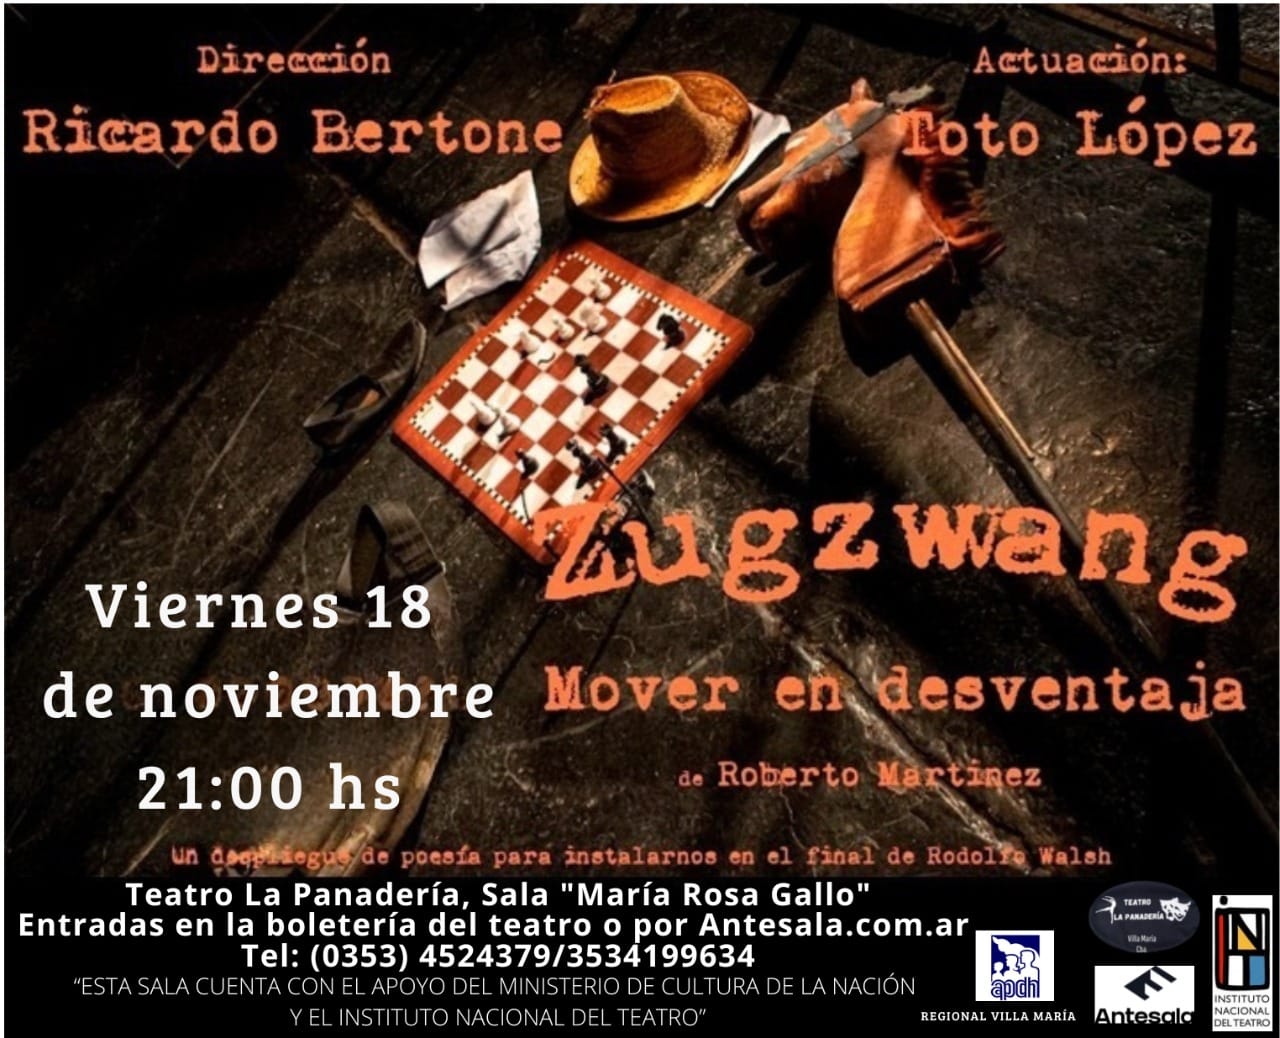 Beneficio para Afiliadas/os: Reservá gratis tu entrada para la obra de teatro “Zugzwang. Mover en desventaja” de Roberto Martínez